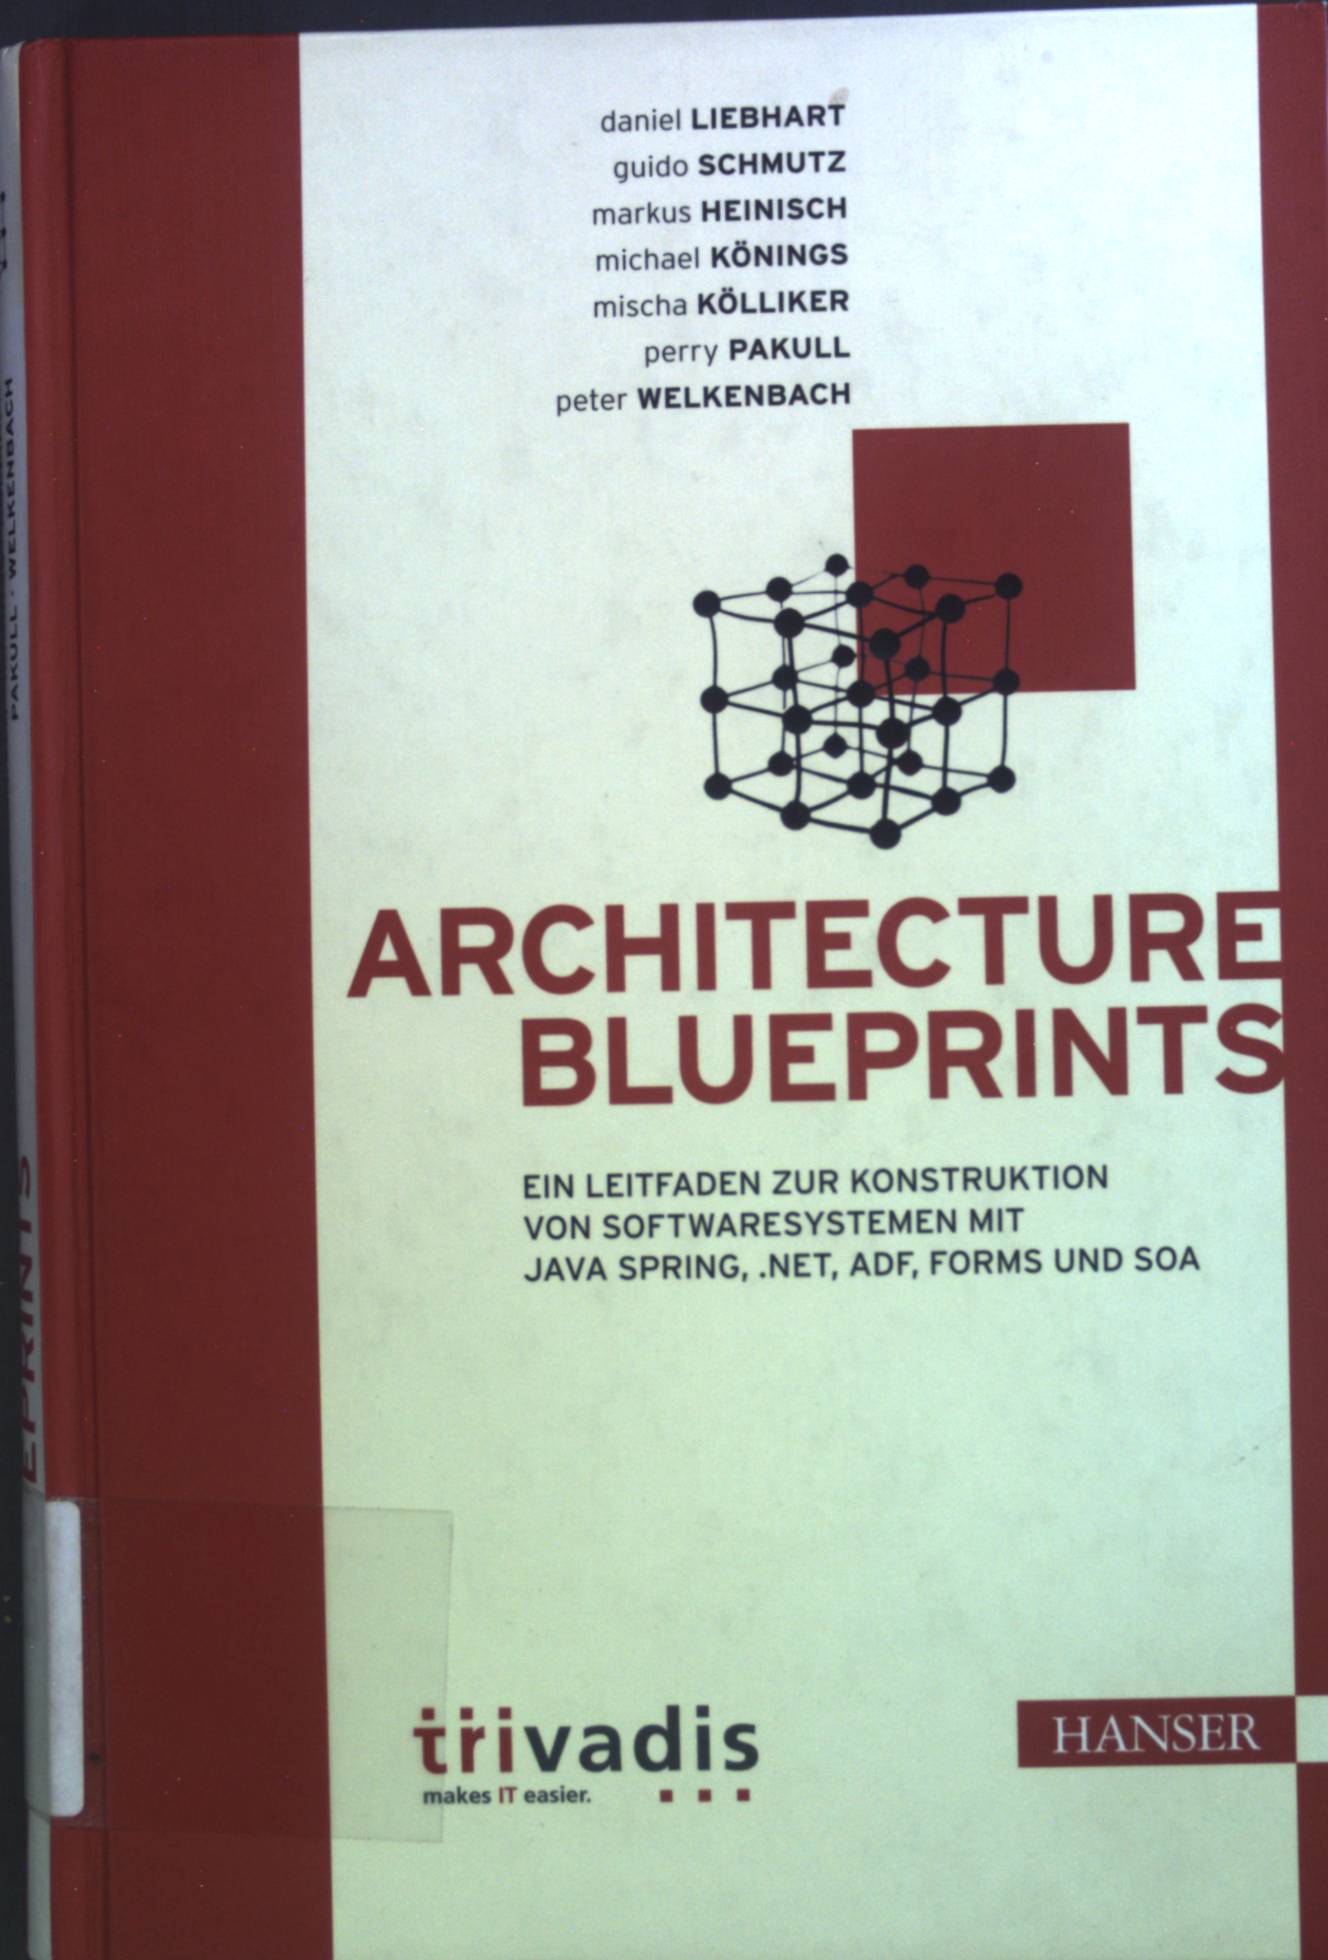 Architecture blueprints : ein Leitfaden zur Konstruktion von Softwaresystemen mit Java Spring, .NET, ADF, Forms und SOA. - Liebhart, Daniel, Guido Schmutz Markus Heinisch u. a.